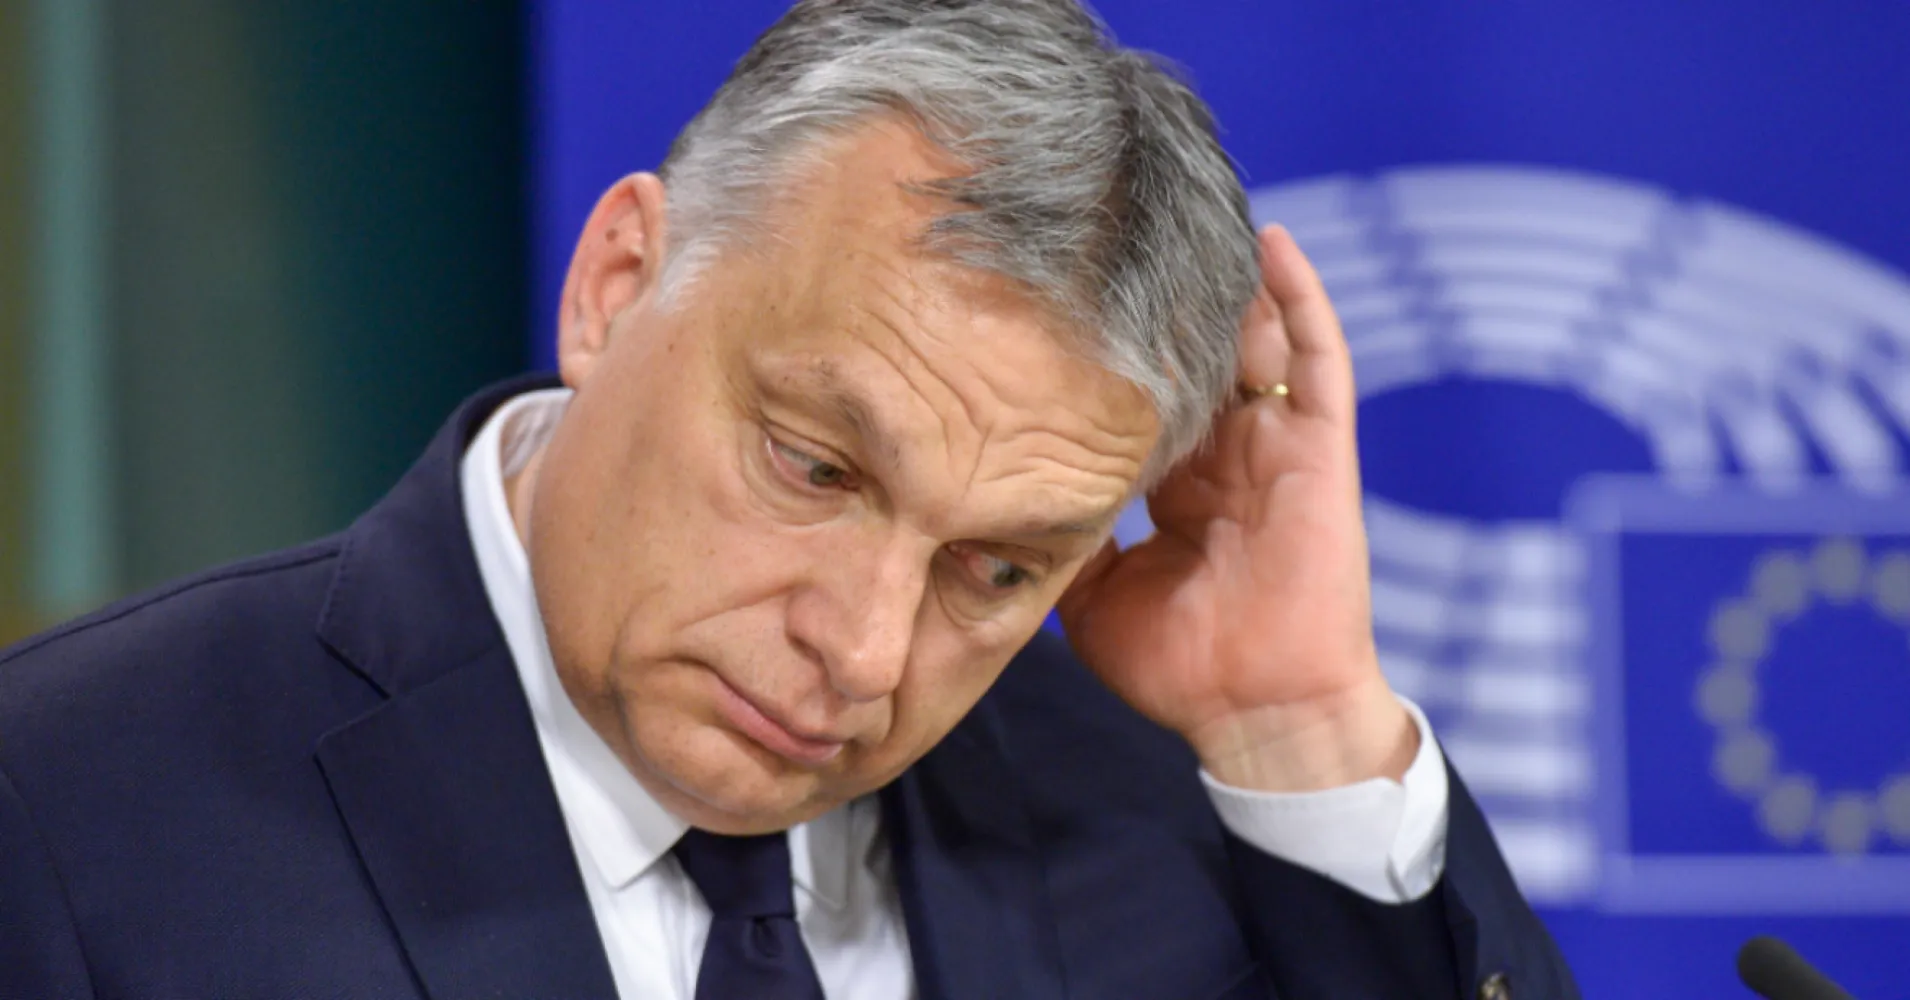 “Le politiche anti-ungheresi dovrebbero distruggere l’Unione Europea”.  L’Italia chiede a Orbán prima delle elezioni